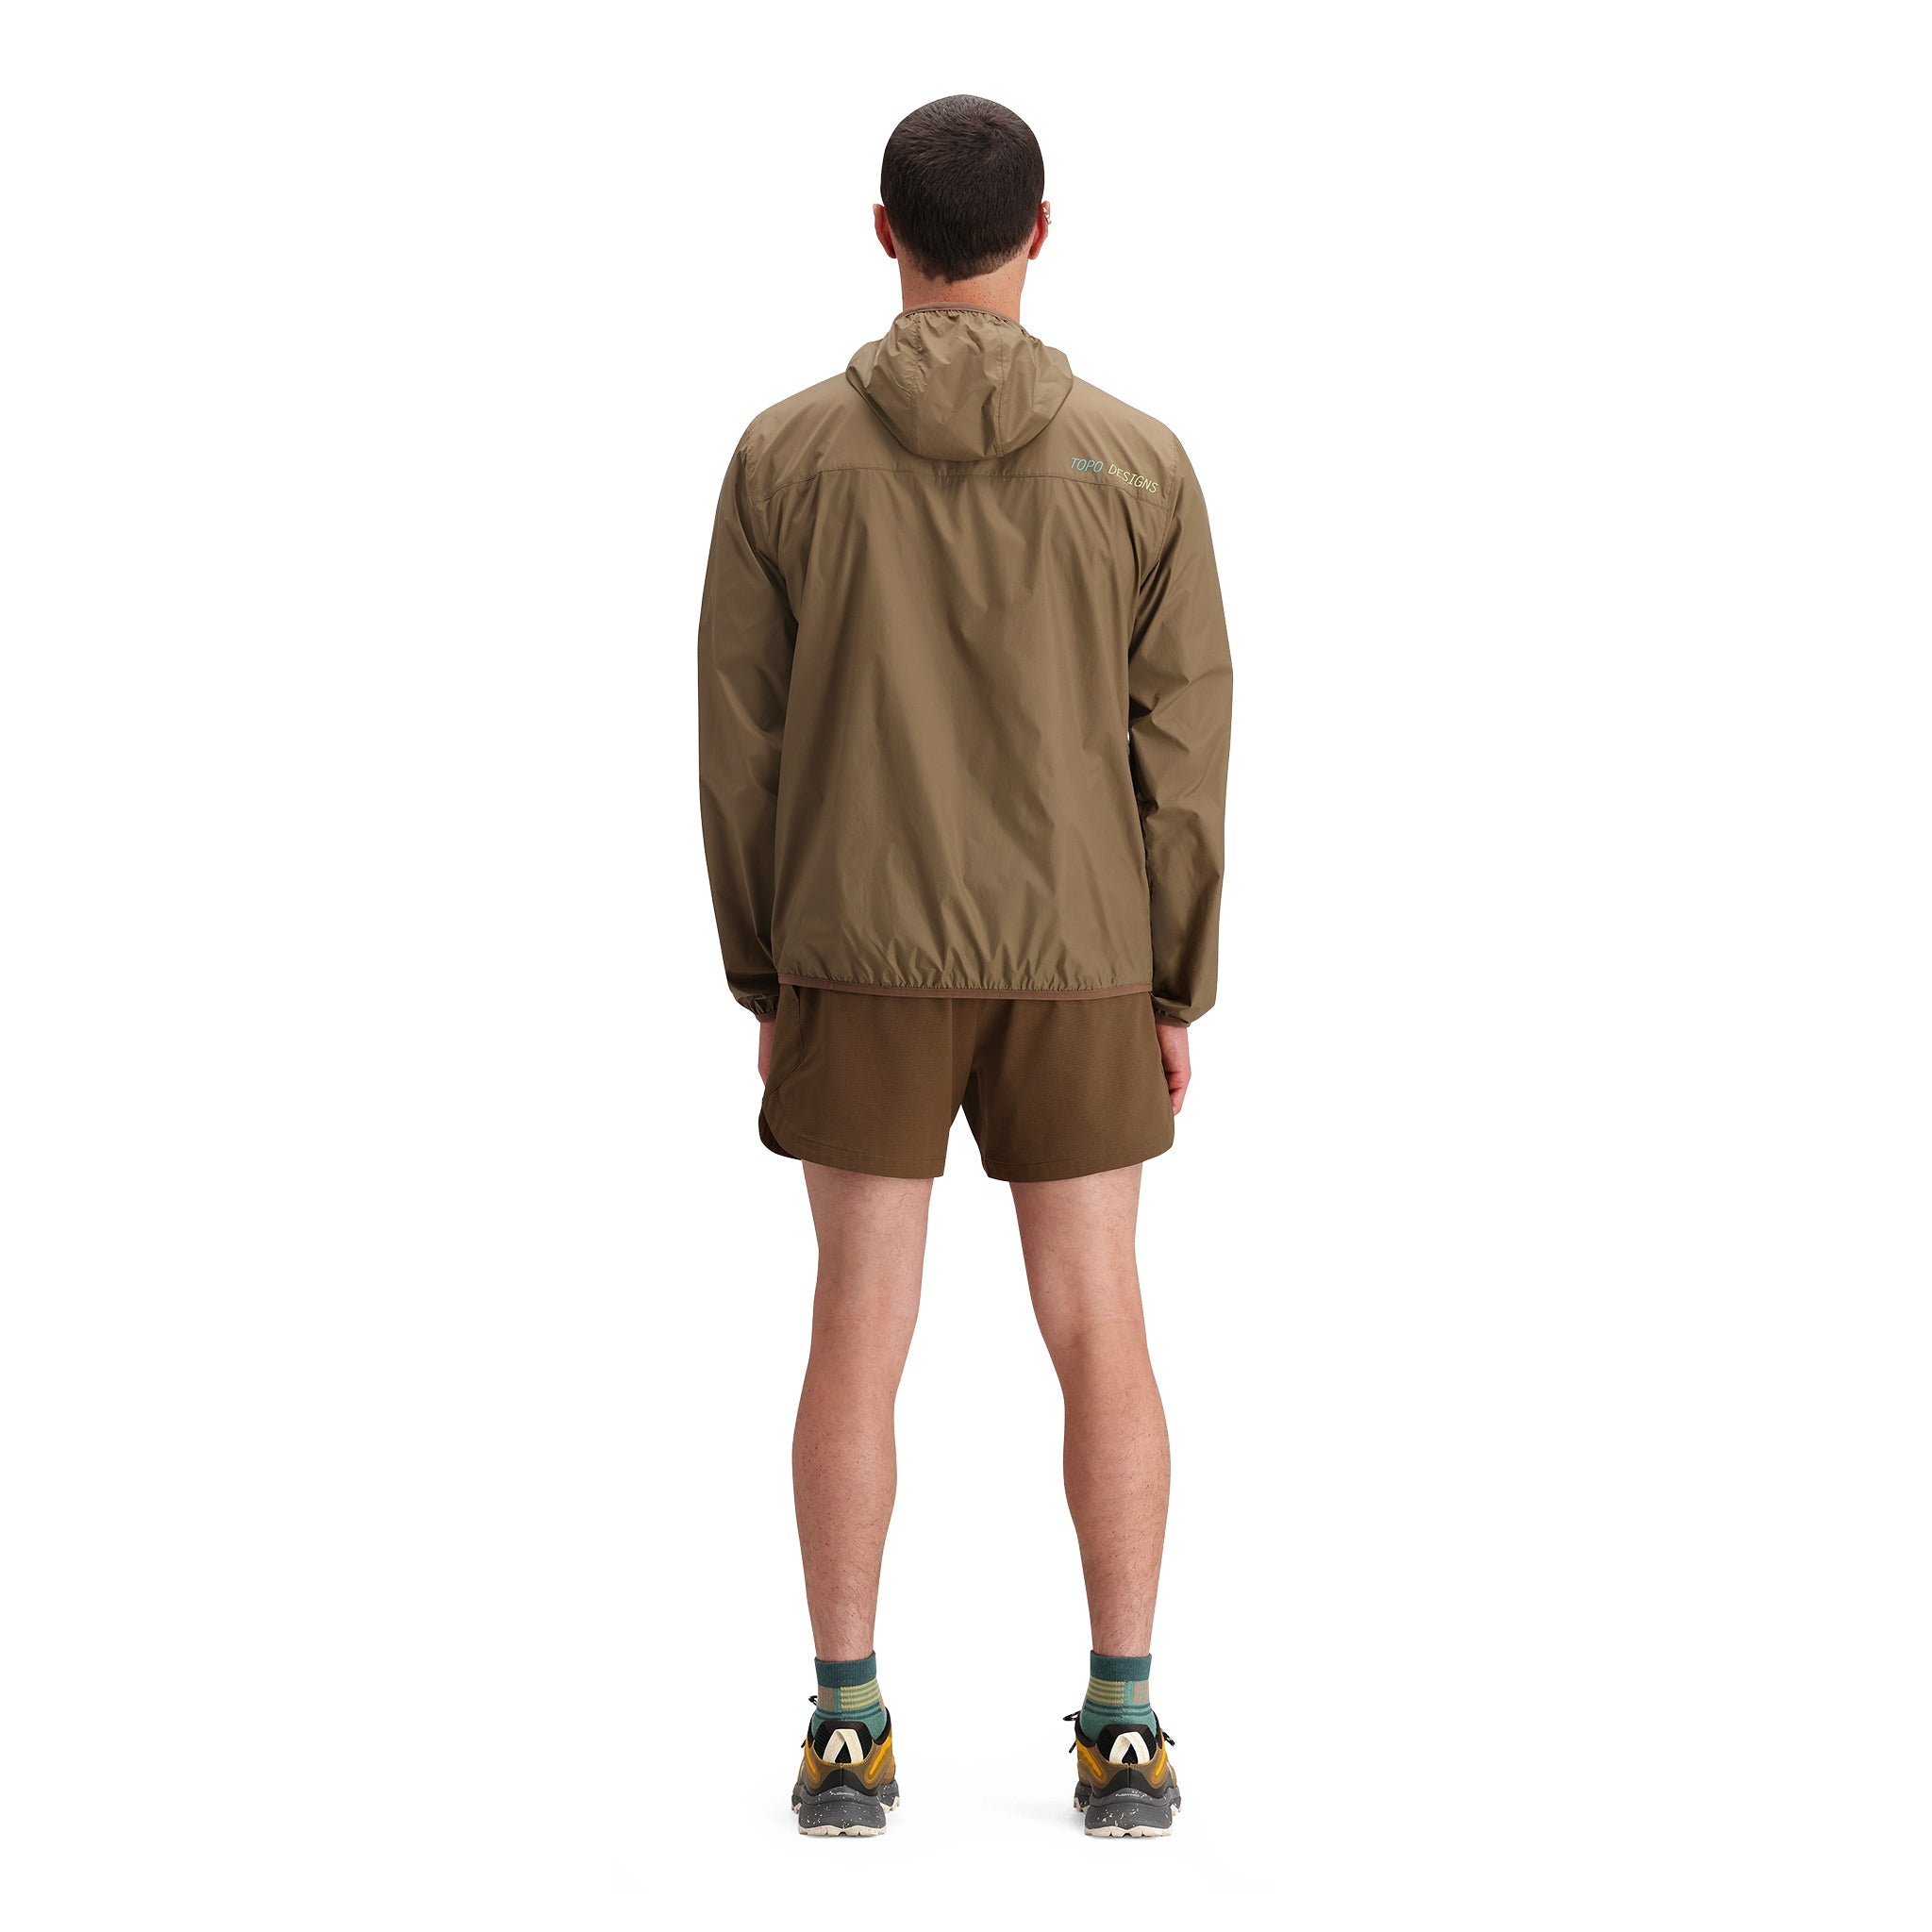 General back model shot of Topo Designs Global Trek Shorts 7" - Men's in "Desert Palm"